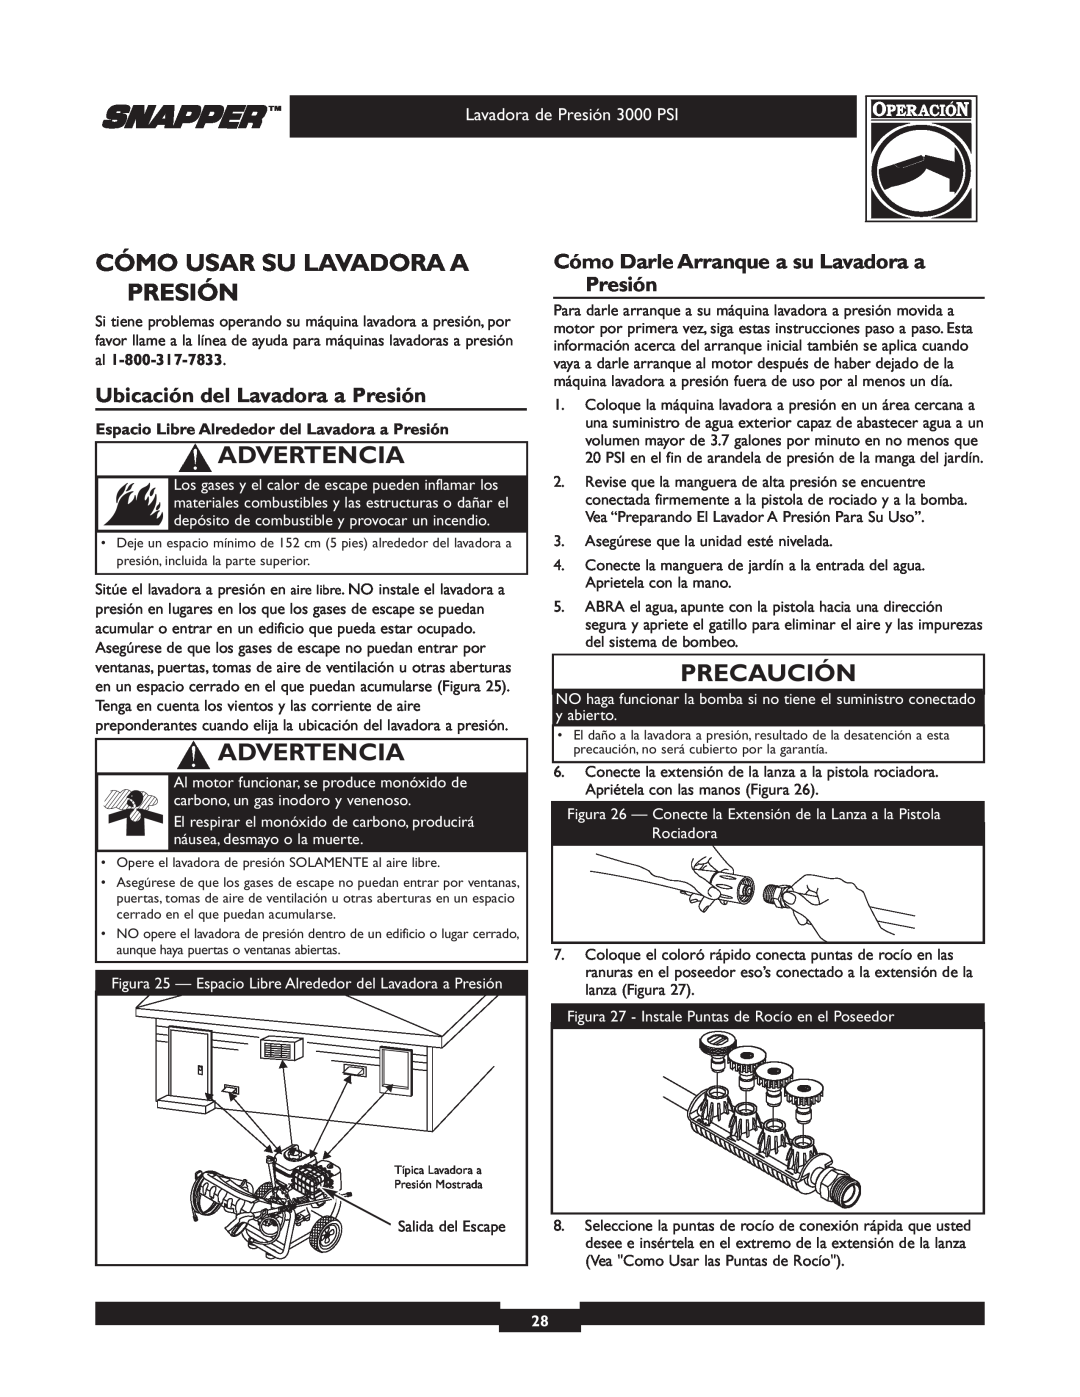 Snapper 020231-2 manual Cómo Usar Su Lavadora A Presión, Ubicación del Lavadora a Presión, Advertencia, Precaución 